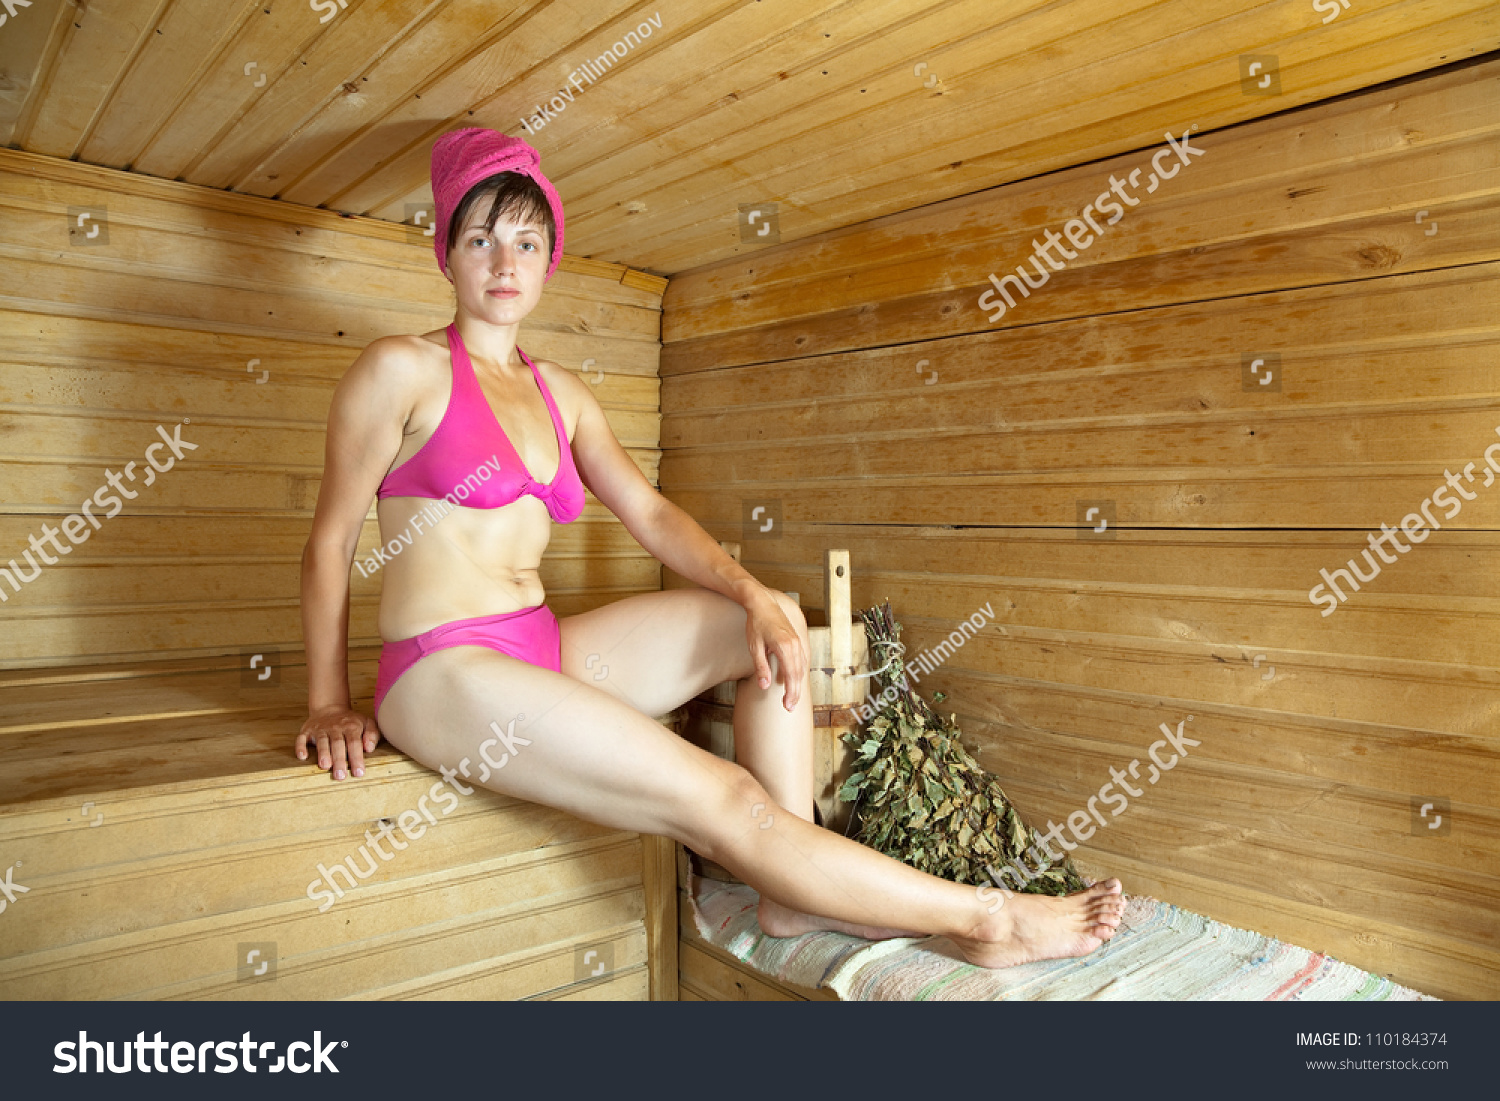 Волосатые общественная баня. Пожилые женщины в сауне. Женская баня. Взрослые женщины в сауне.